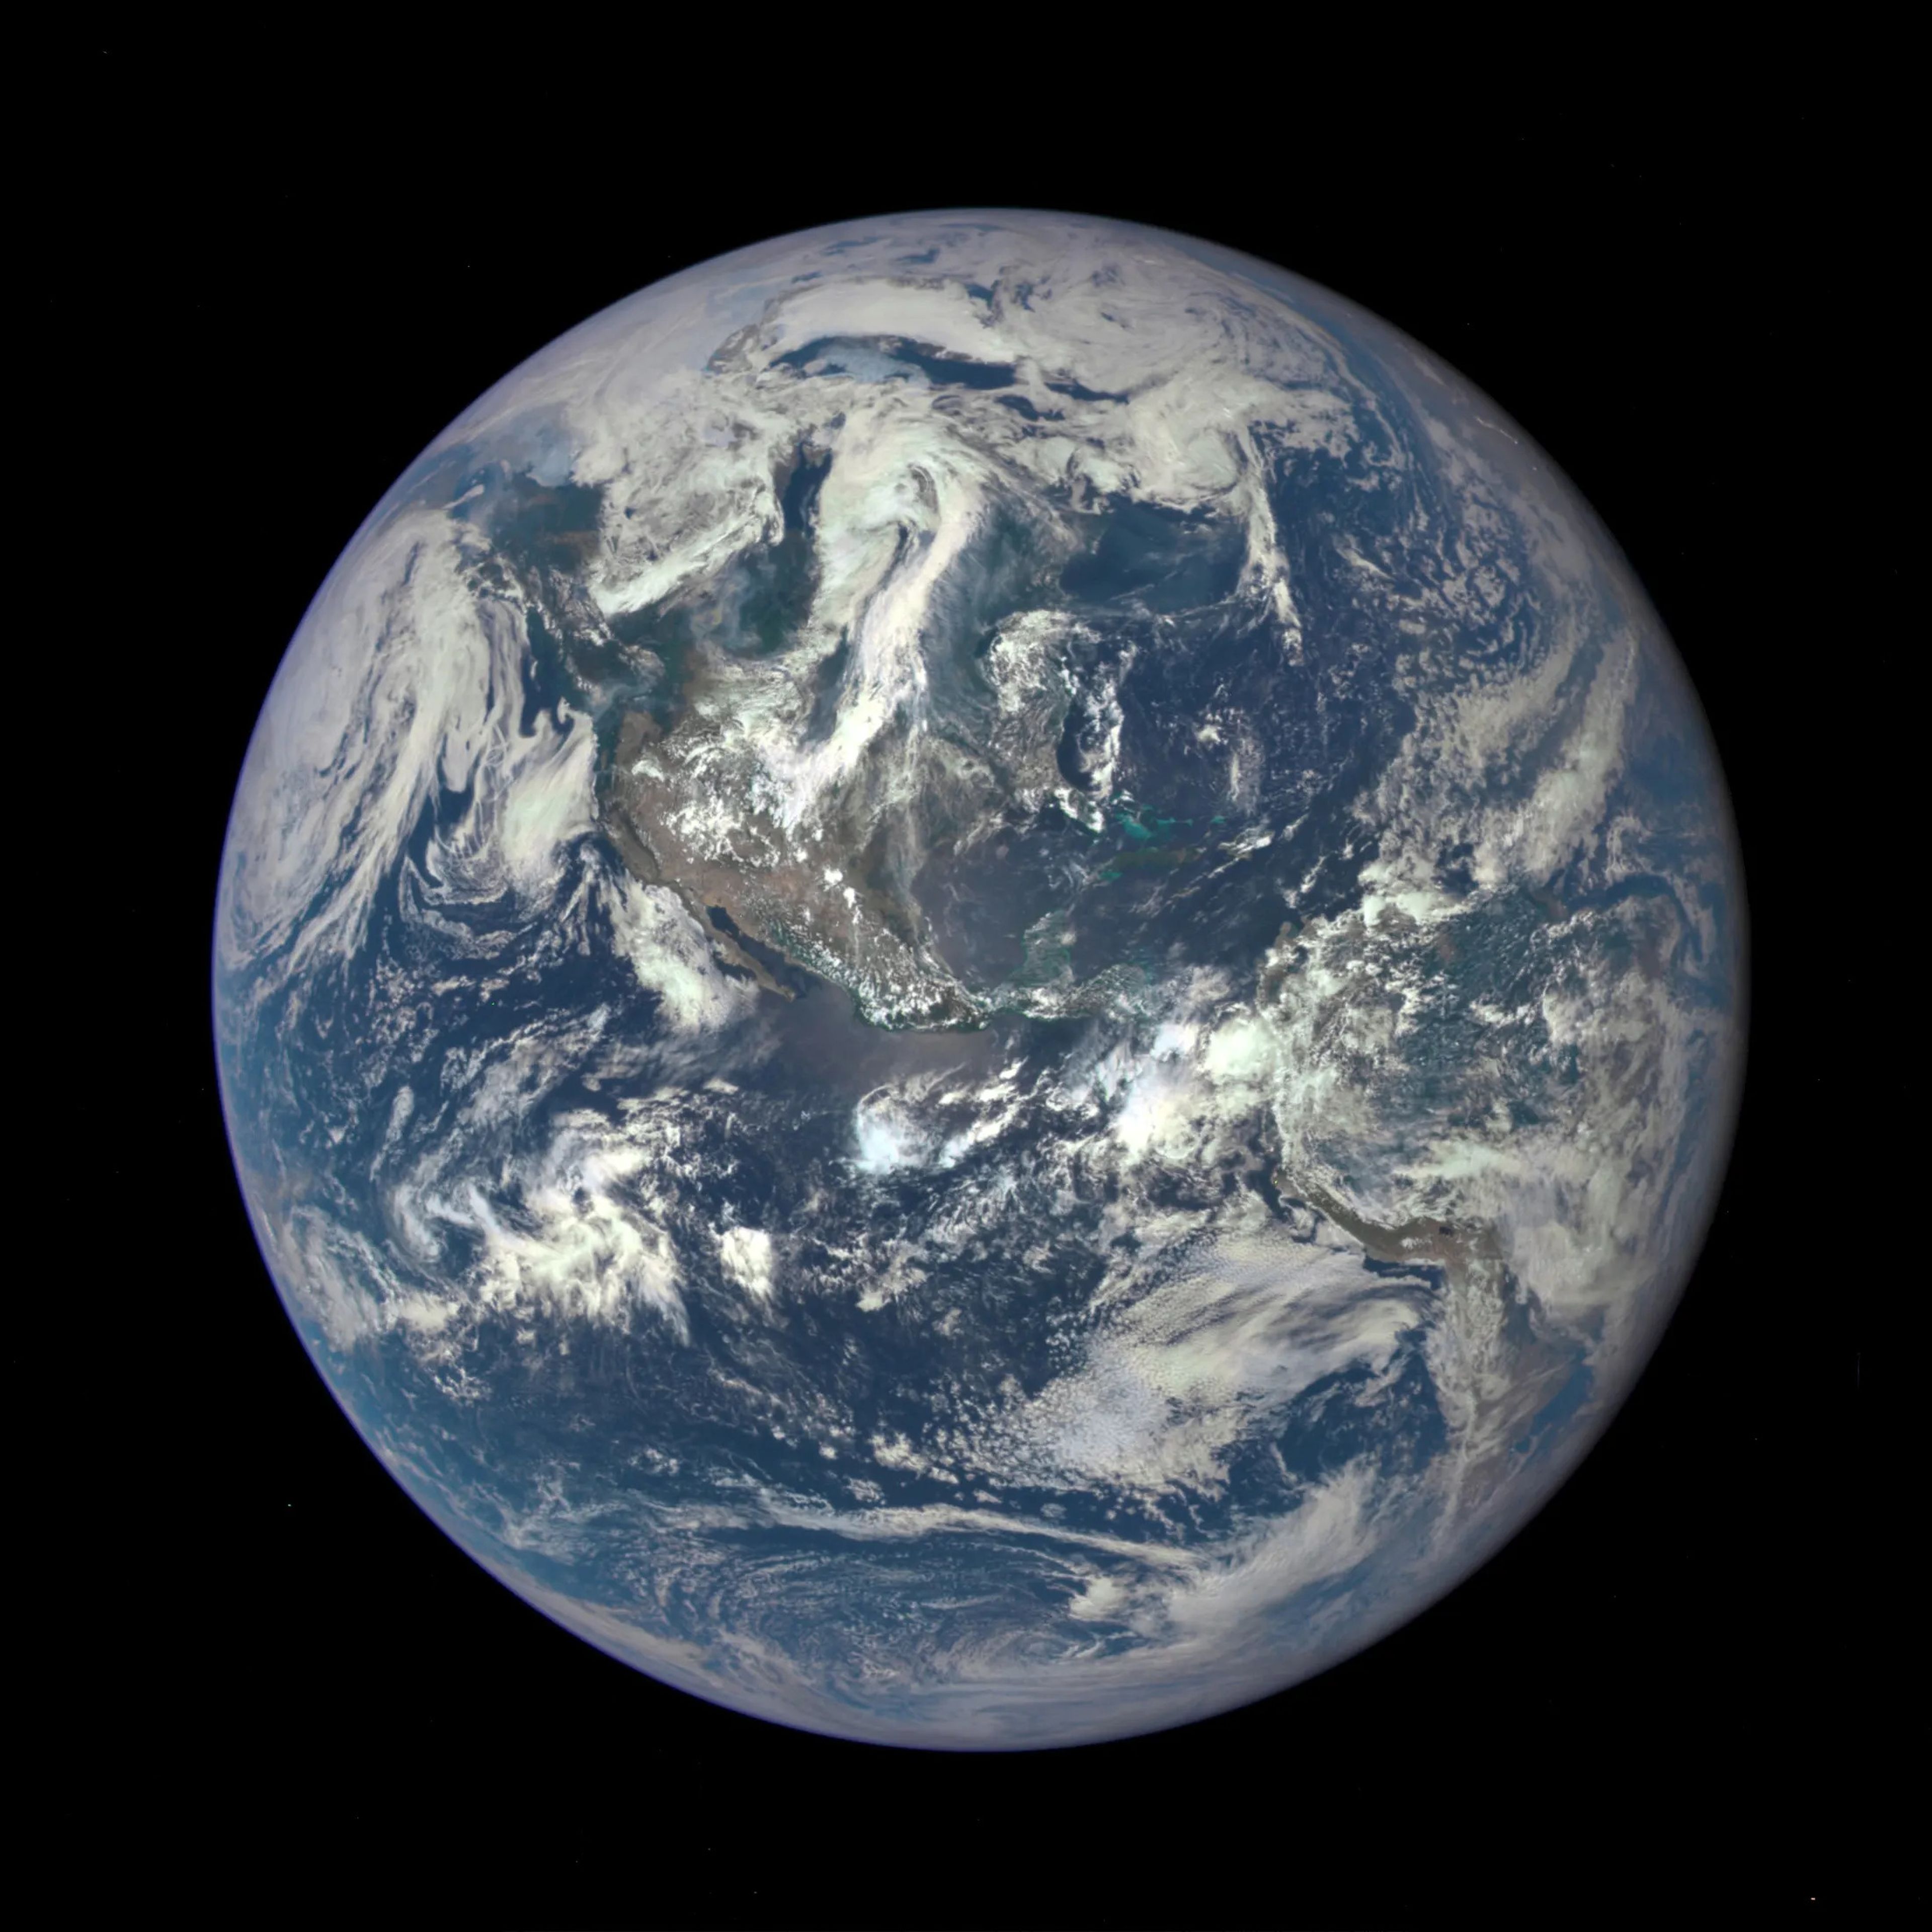 Imagene de la Tierra captada por la Earth Polychromatic Imaging Camera (EPIC) de la NASA.